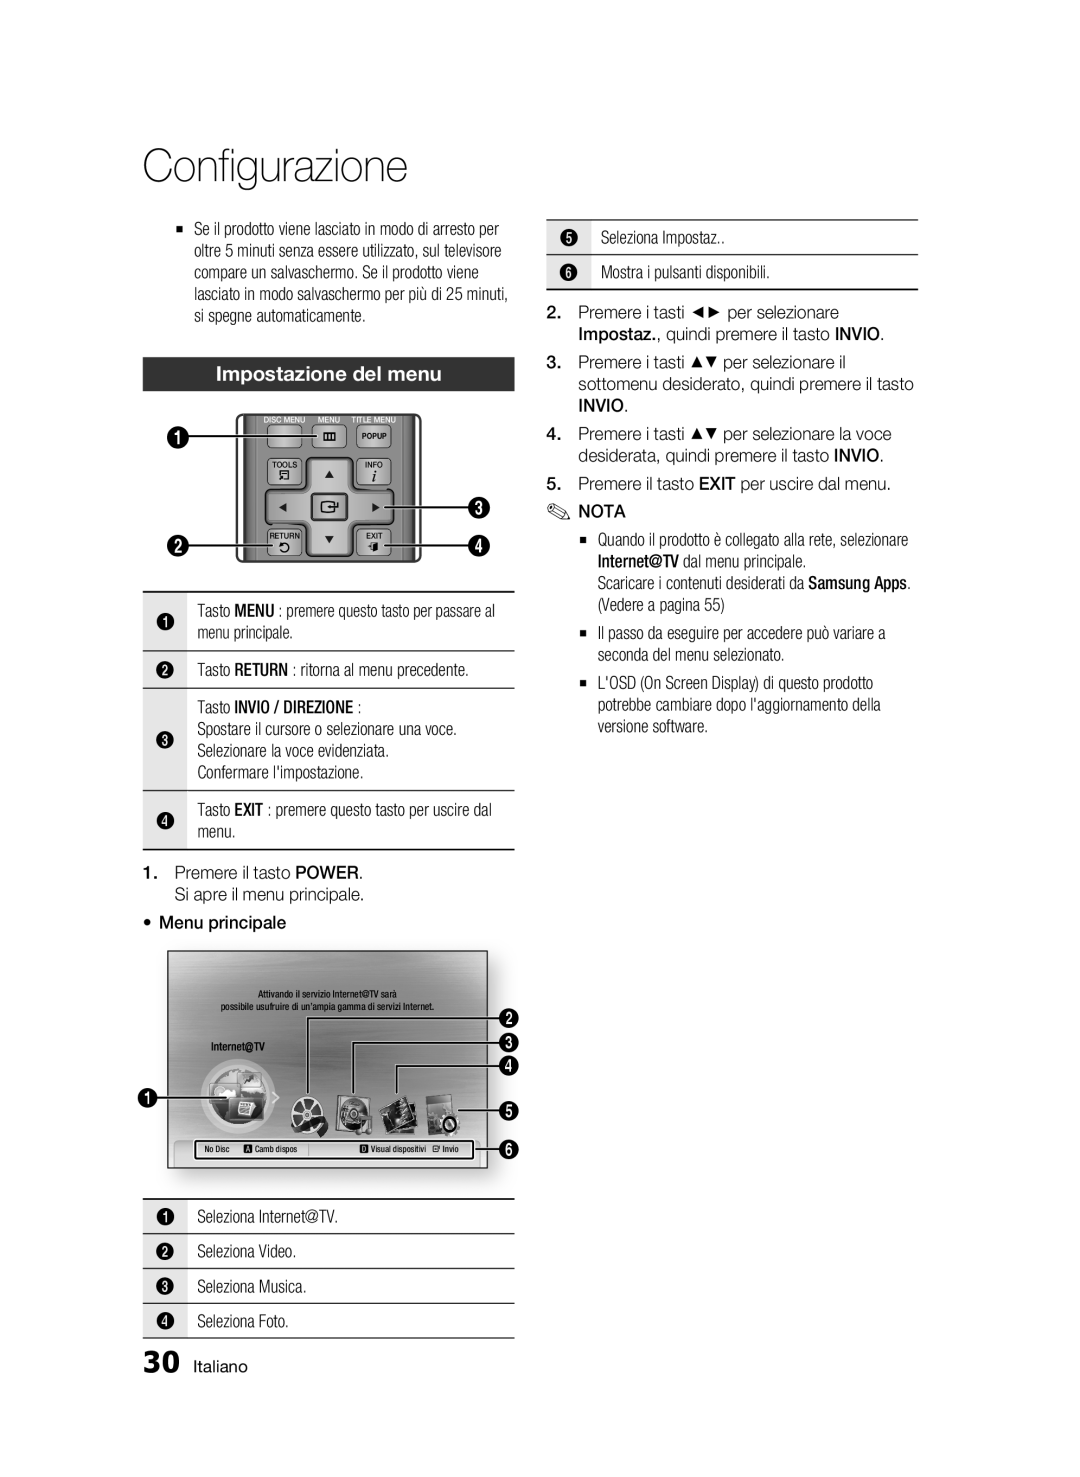 Samsung BD-C6500/XEF manual Impostazione del menu, Configurazione, Spostare il cursore o selezionare una voce, Italiano 